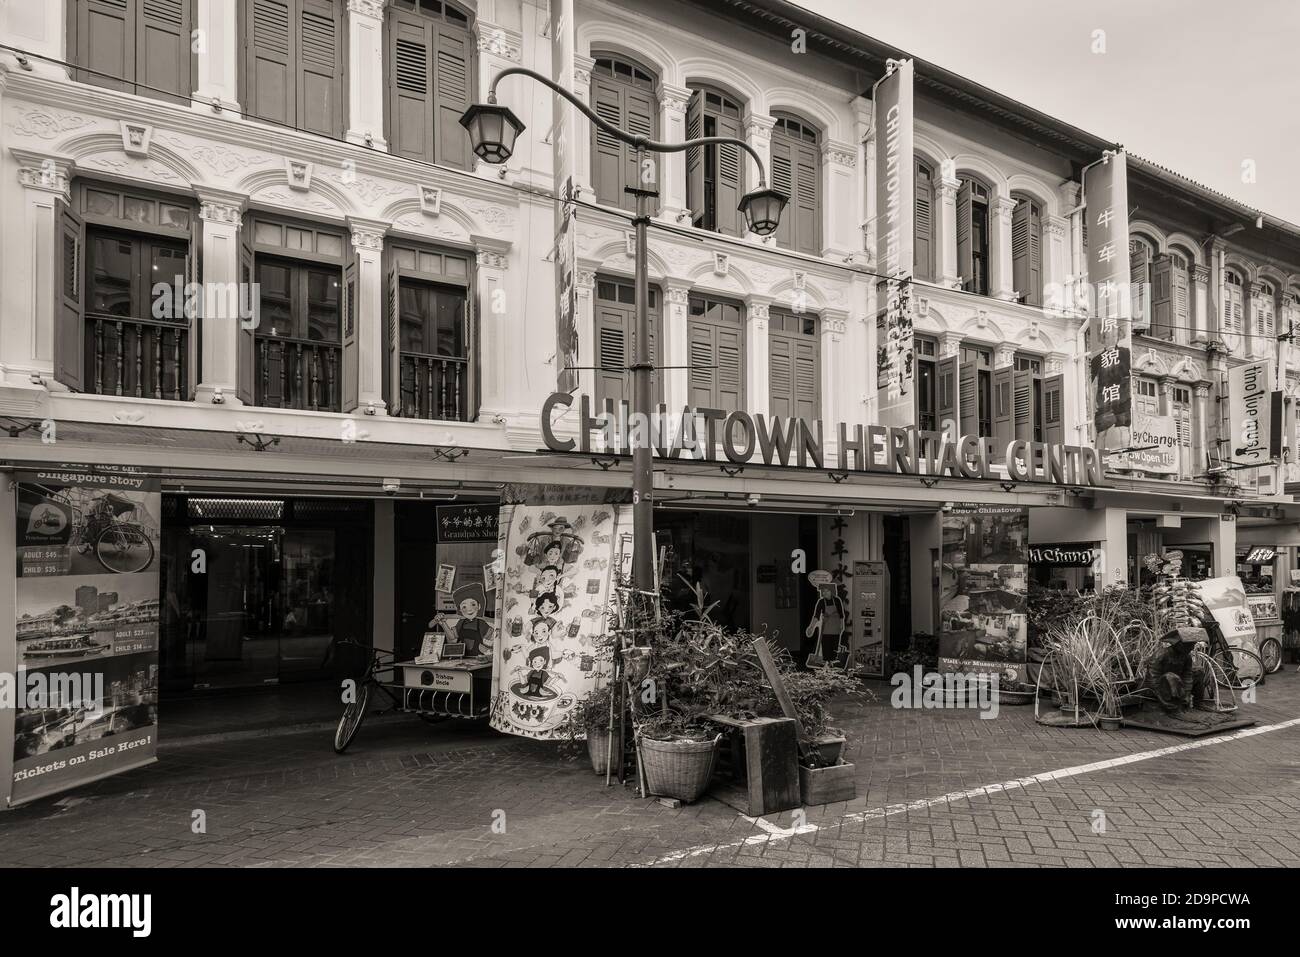 Singapur - 5. Dezember 2019: Blick auf das Chinatown Heritage Center in der Pagoda Street in Singapur. Schwarz-Weiß-Fotosepia im Retro-Stil getönt. Stockfoto